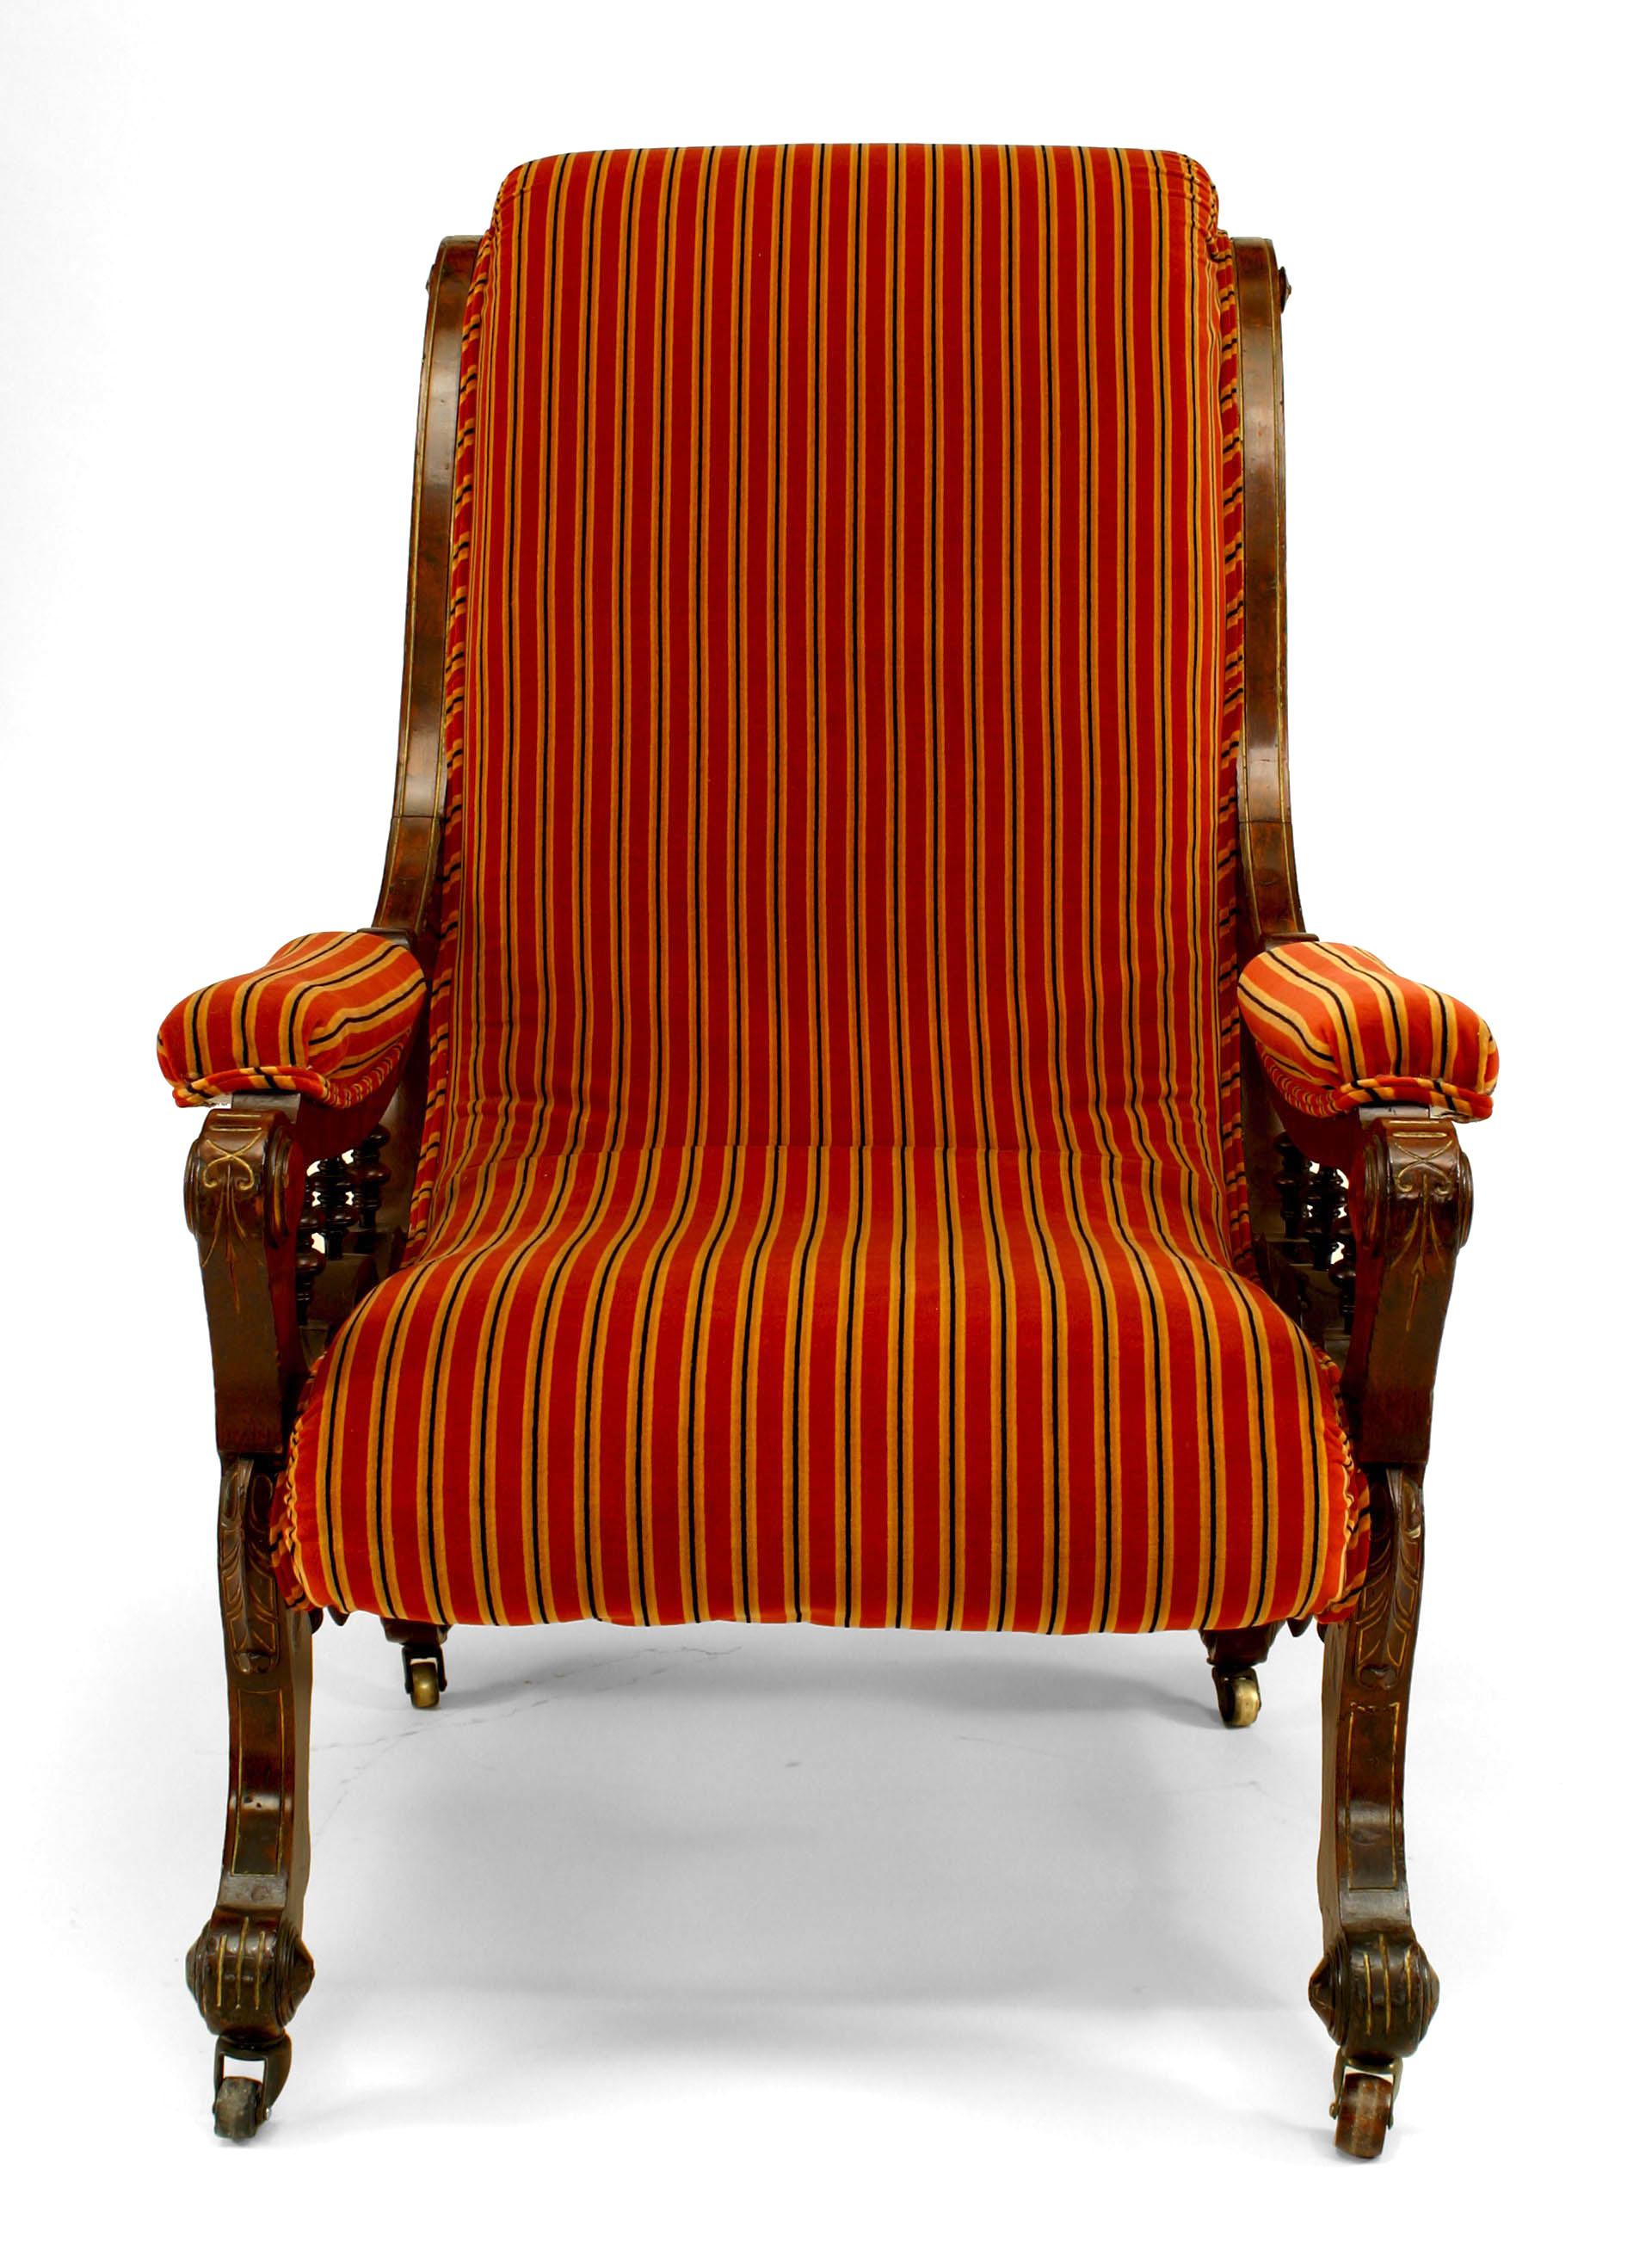 Amerikanischer viktorianischer Sessel im Eastlake-Stil aus Wurzelholz und vergoldetem Schlittenrücken mit gestreifter rostfarbener Polsterung. (Unterzeichnet: HOSTATTER, Pat Pending, 4/3/1877)
